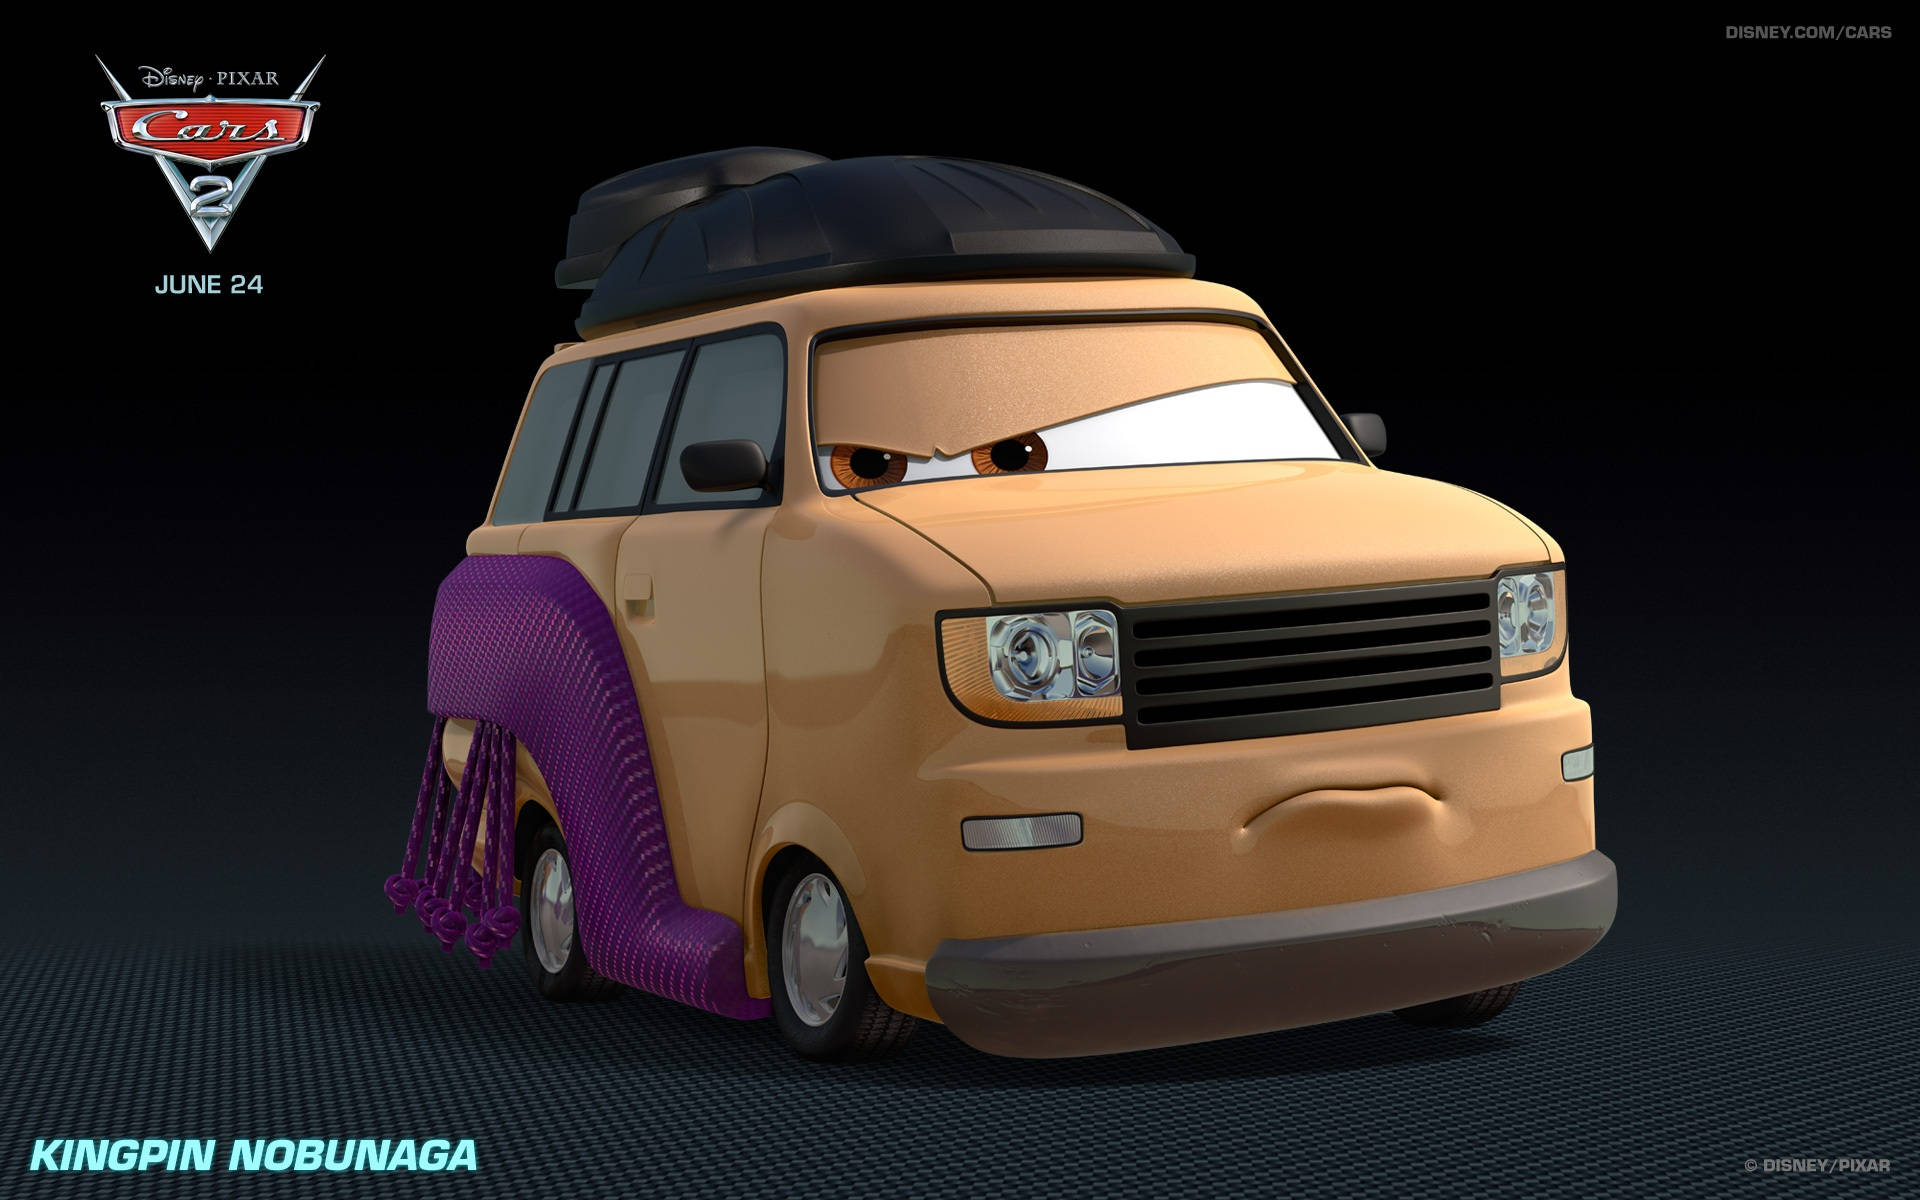 Disney Pixar Kingpin Nobunaga Cars 2 Picture